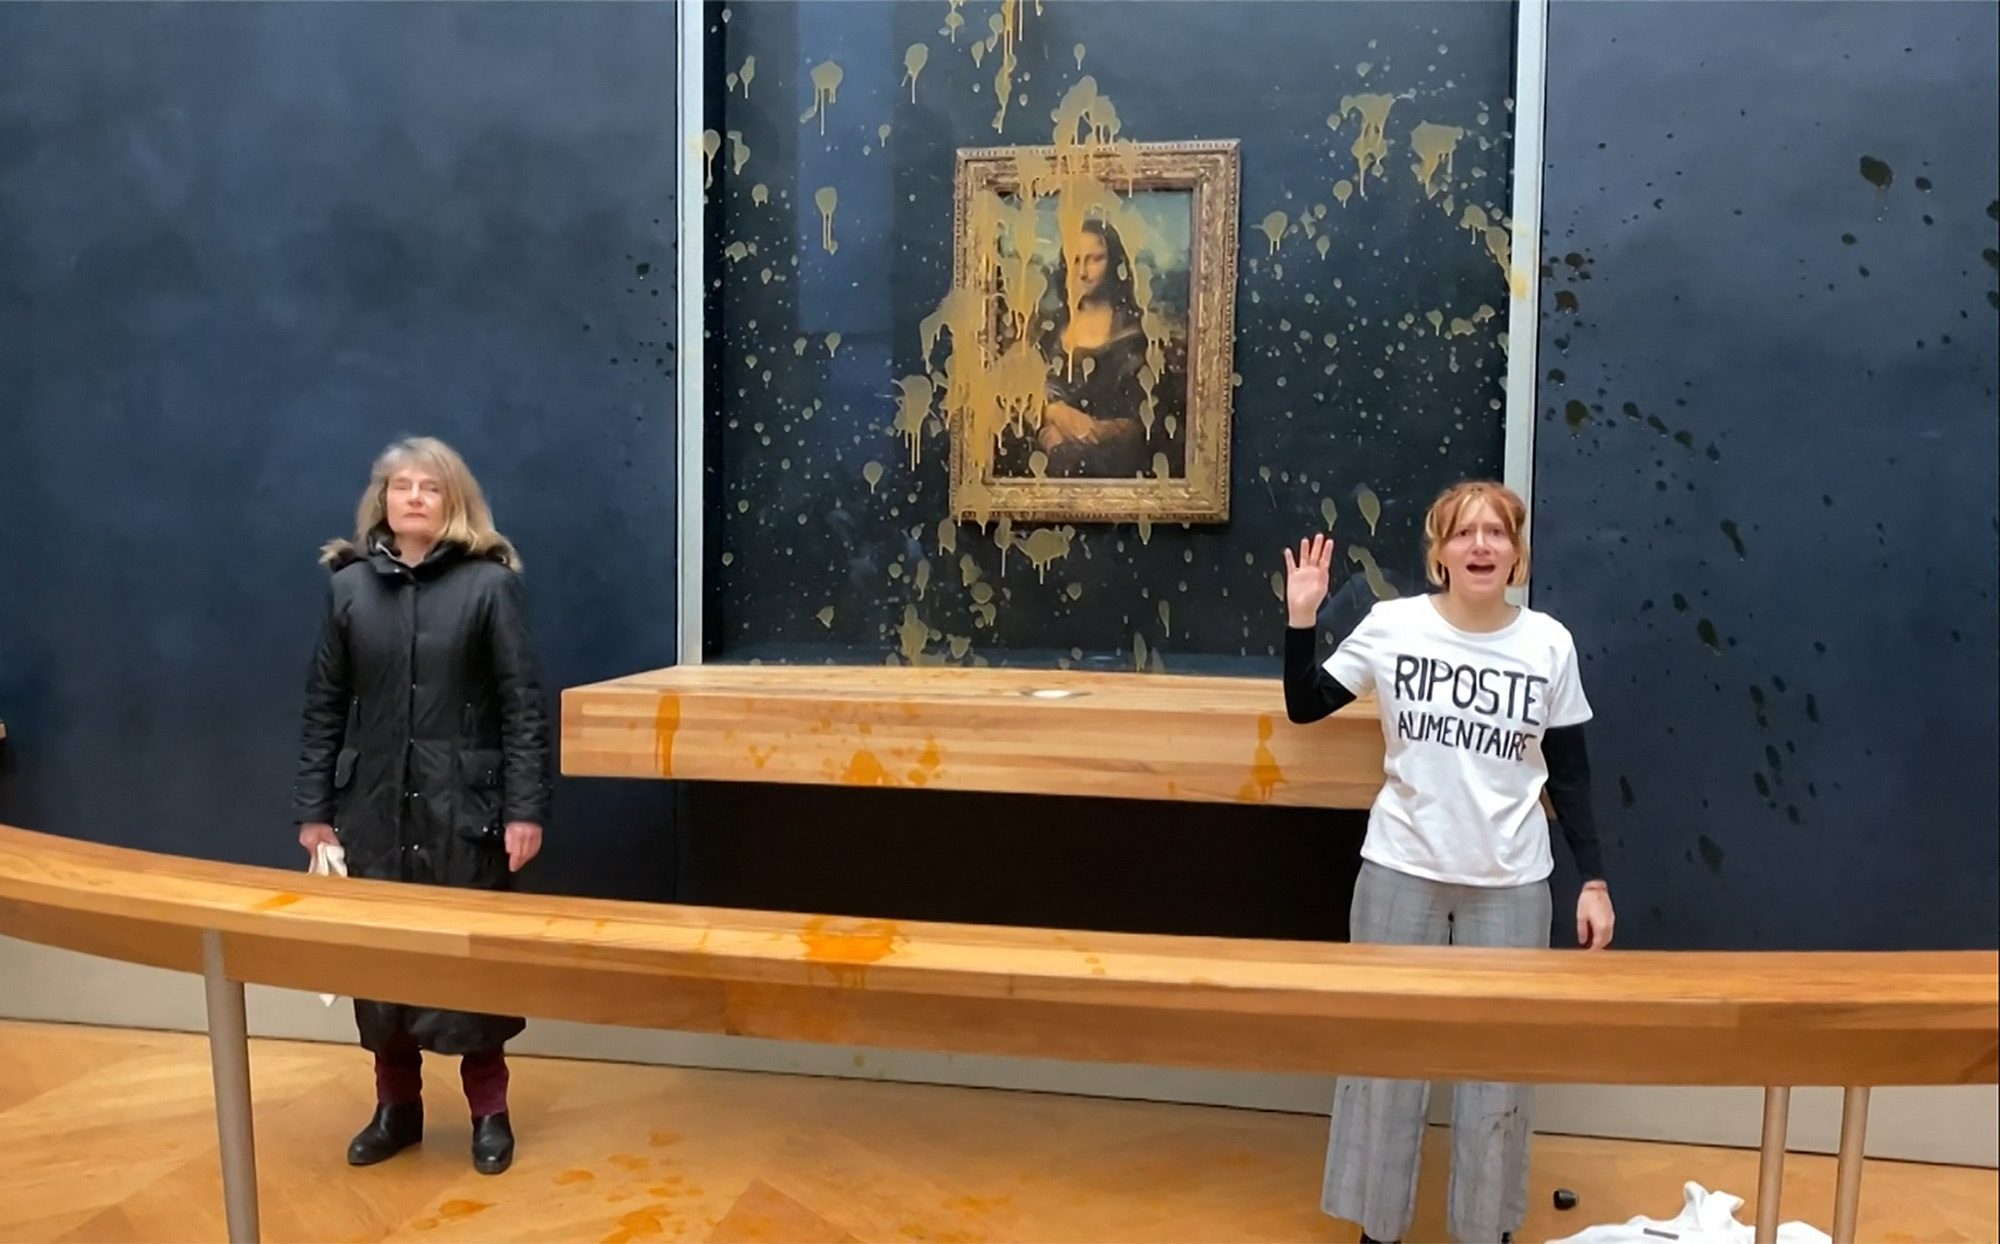 Двоє екологічних активісток з групи «Riposte Alimentaire» («Продовольча відплата») стоять перед картиною Леонардо да Вінчі «Мона Ліза» (La Joconde) після того, як кинули в неї суп в музеї Лувр у Парижі, 28 січня 2024 року. Протестувальниці кинули суп у куленепробивне скло, що захищає «Мону Лізу», вимагаючи права на «здорову їжу, яка на шкодить довкіллю», повідомив журналіст AFP. Це останній напад на шедевр у французькому Луврі після того, як у травні 2022 року хтось кинув у нього заварний пиріг. Через товстий скляний корпус картина не постраждала. Фото: DAVID CANTINIAUX/AFPTV/AFP via Getty Images